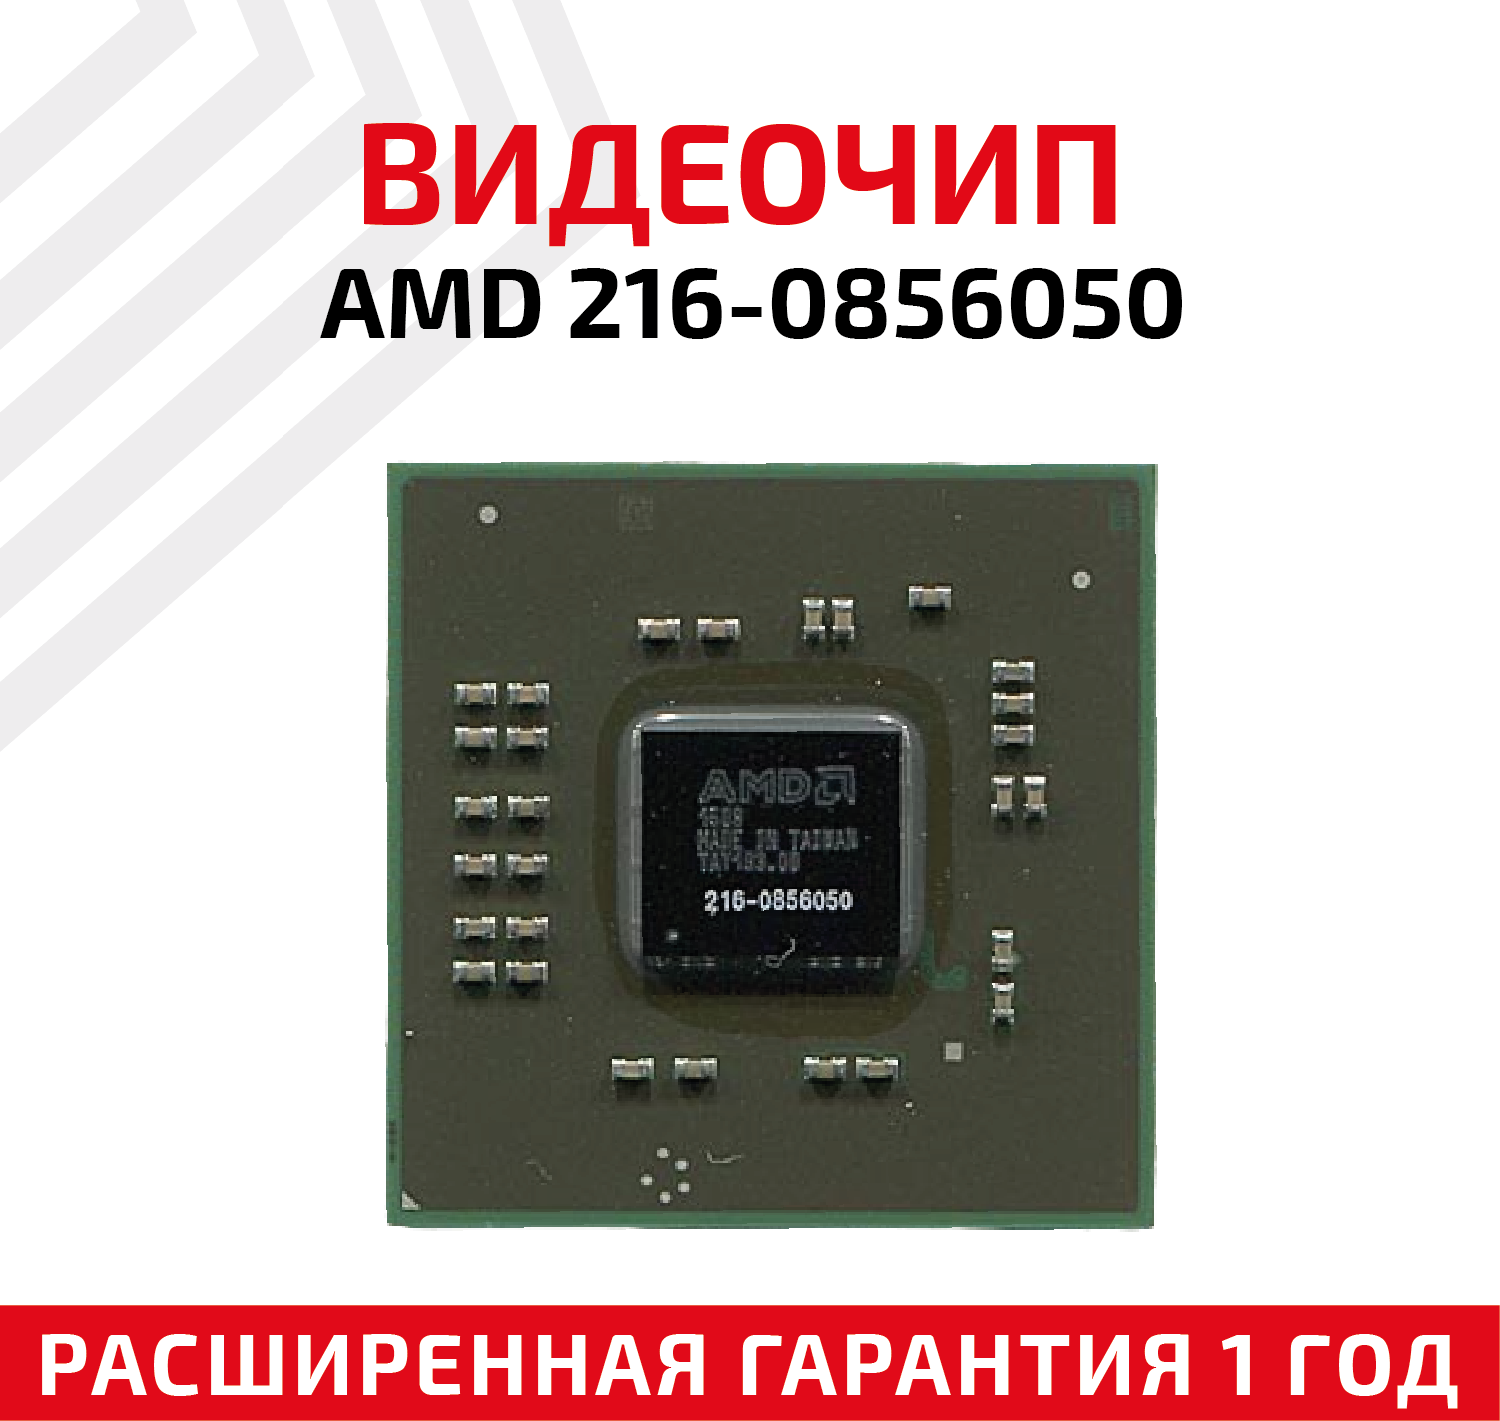 Видеочип AMD 216-0856050